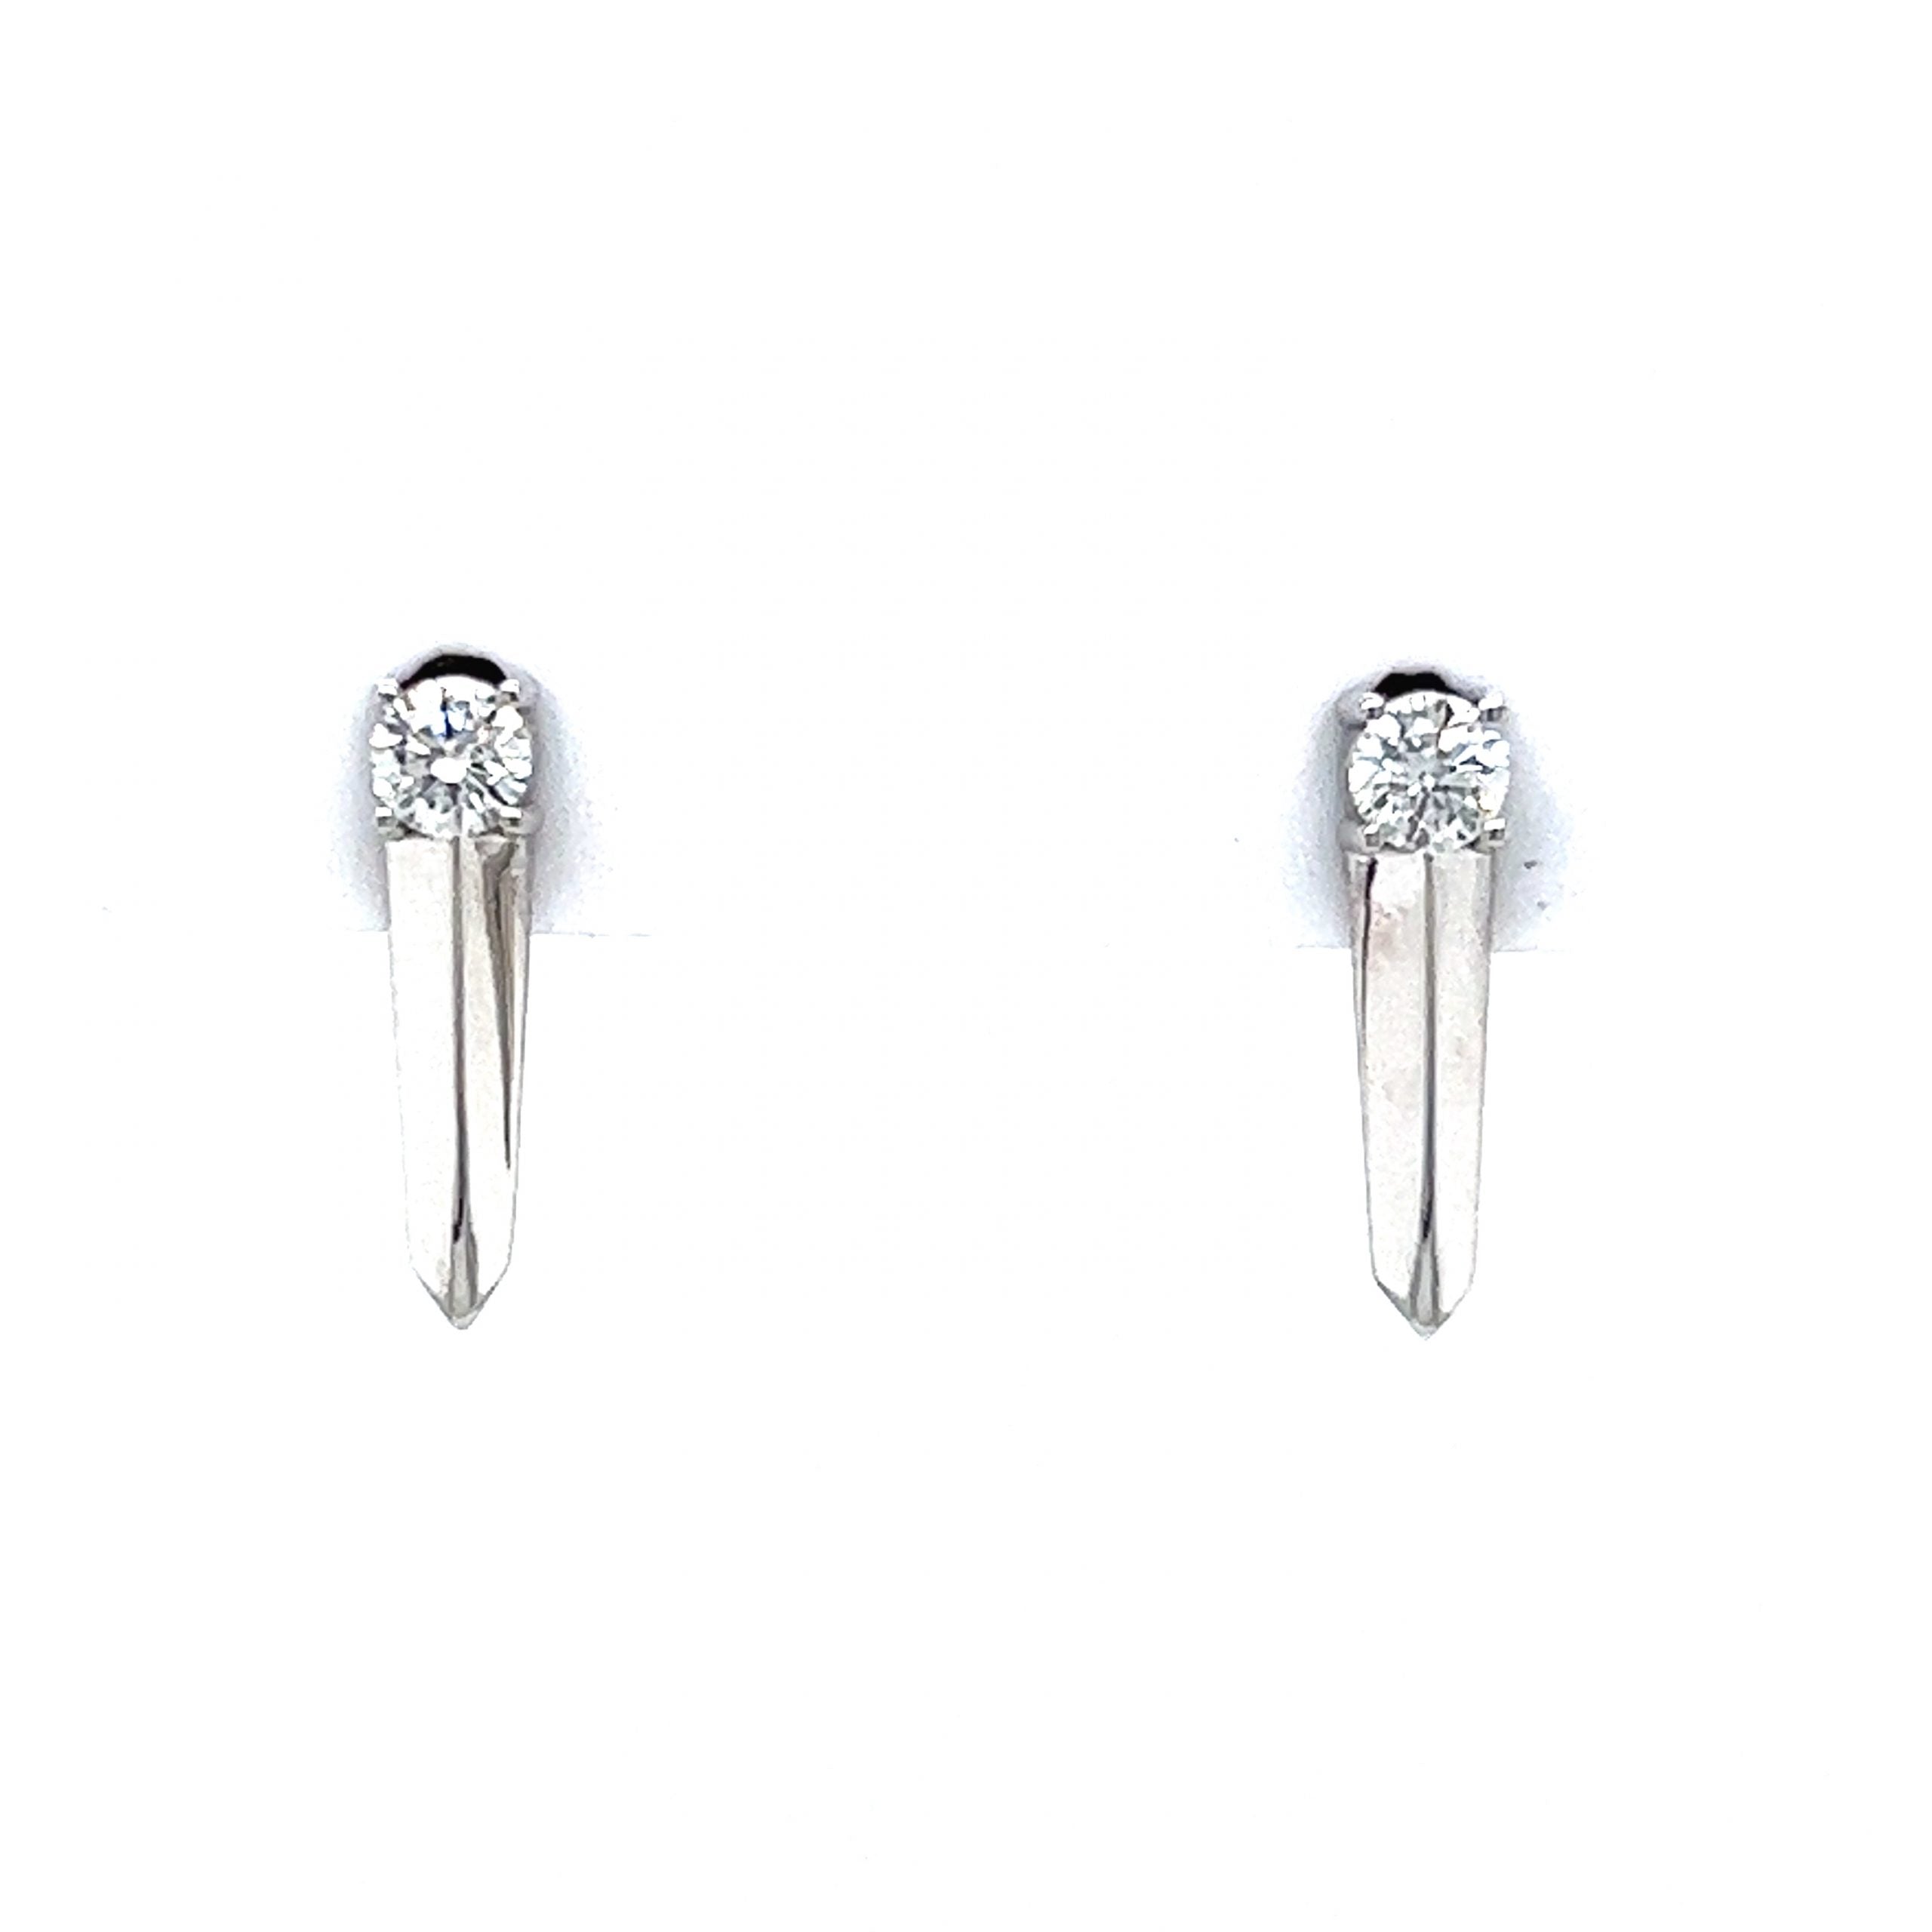 Single Diamond Spike Stud Earrings in 14K White Gold